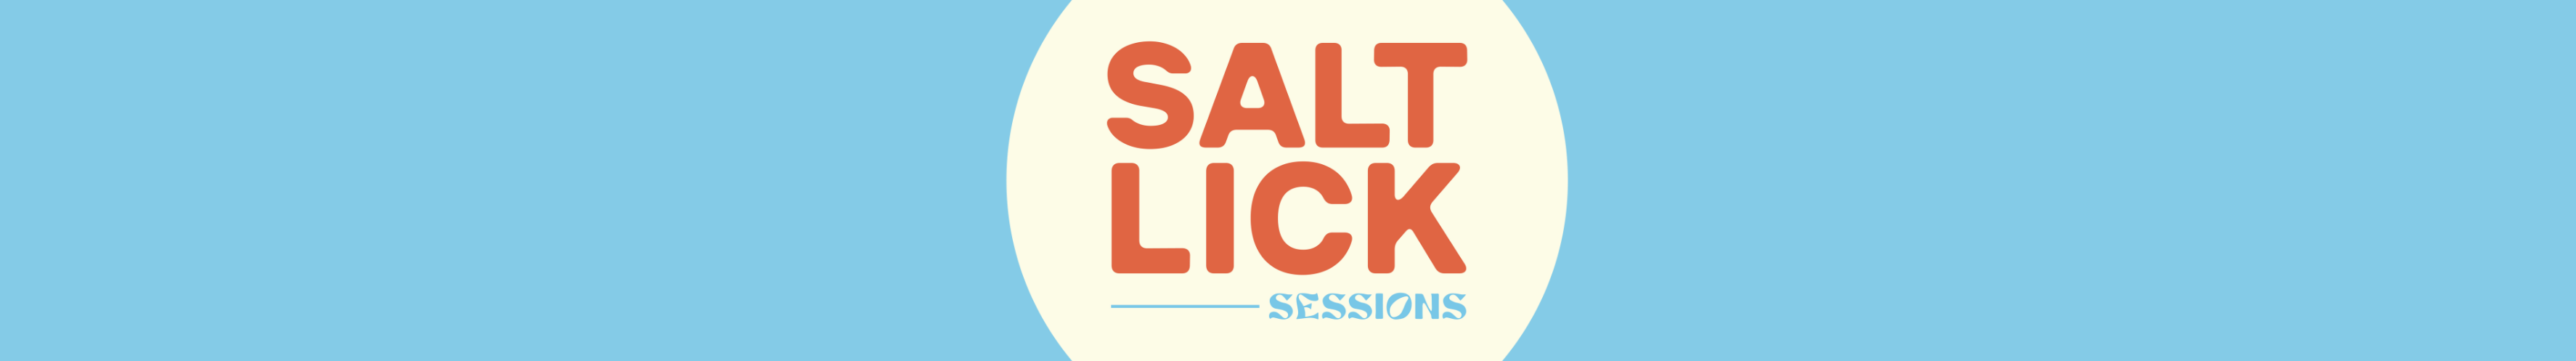 salt lick banner